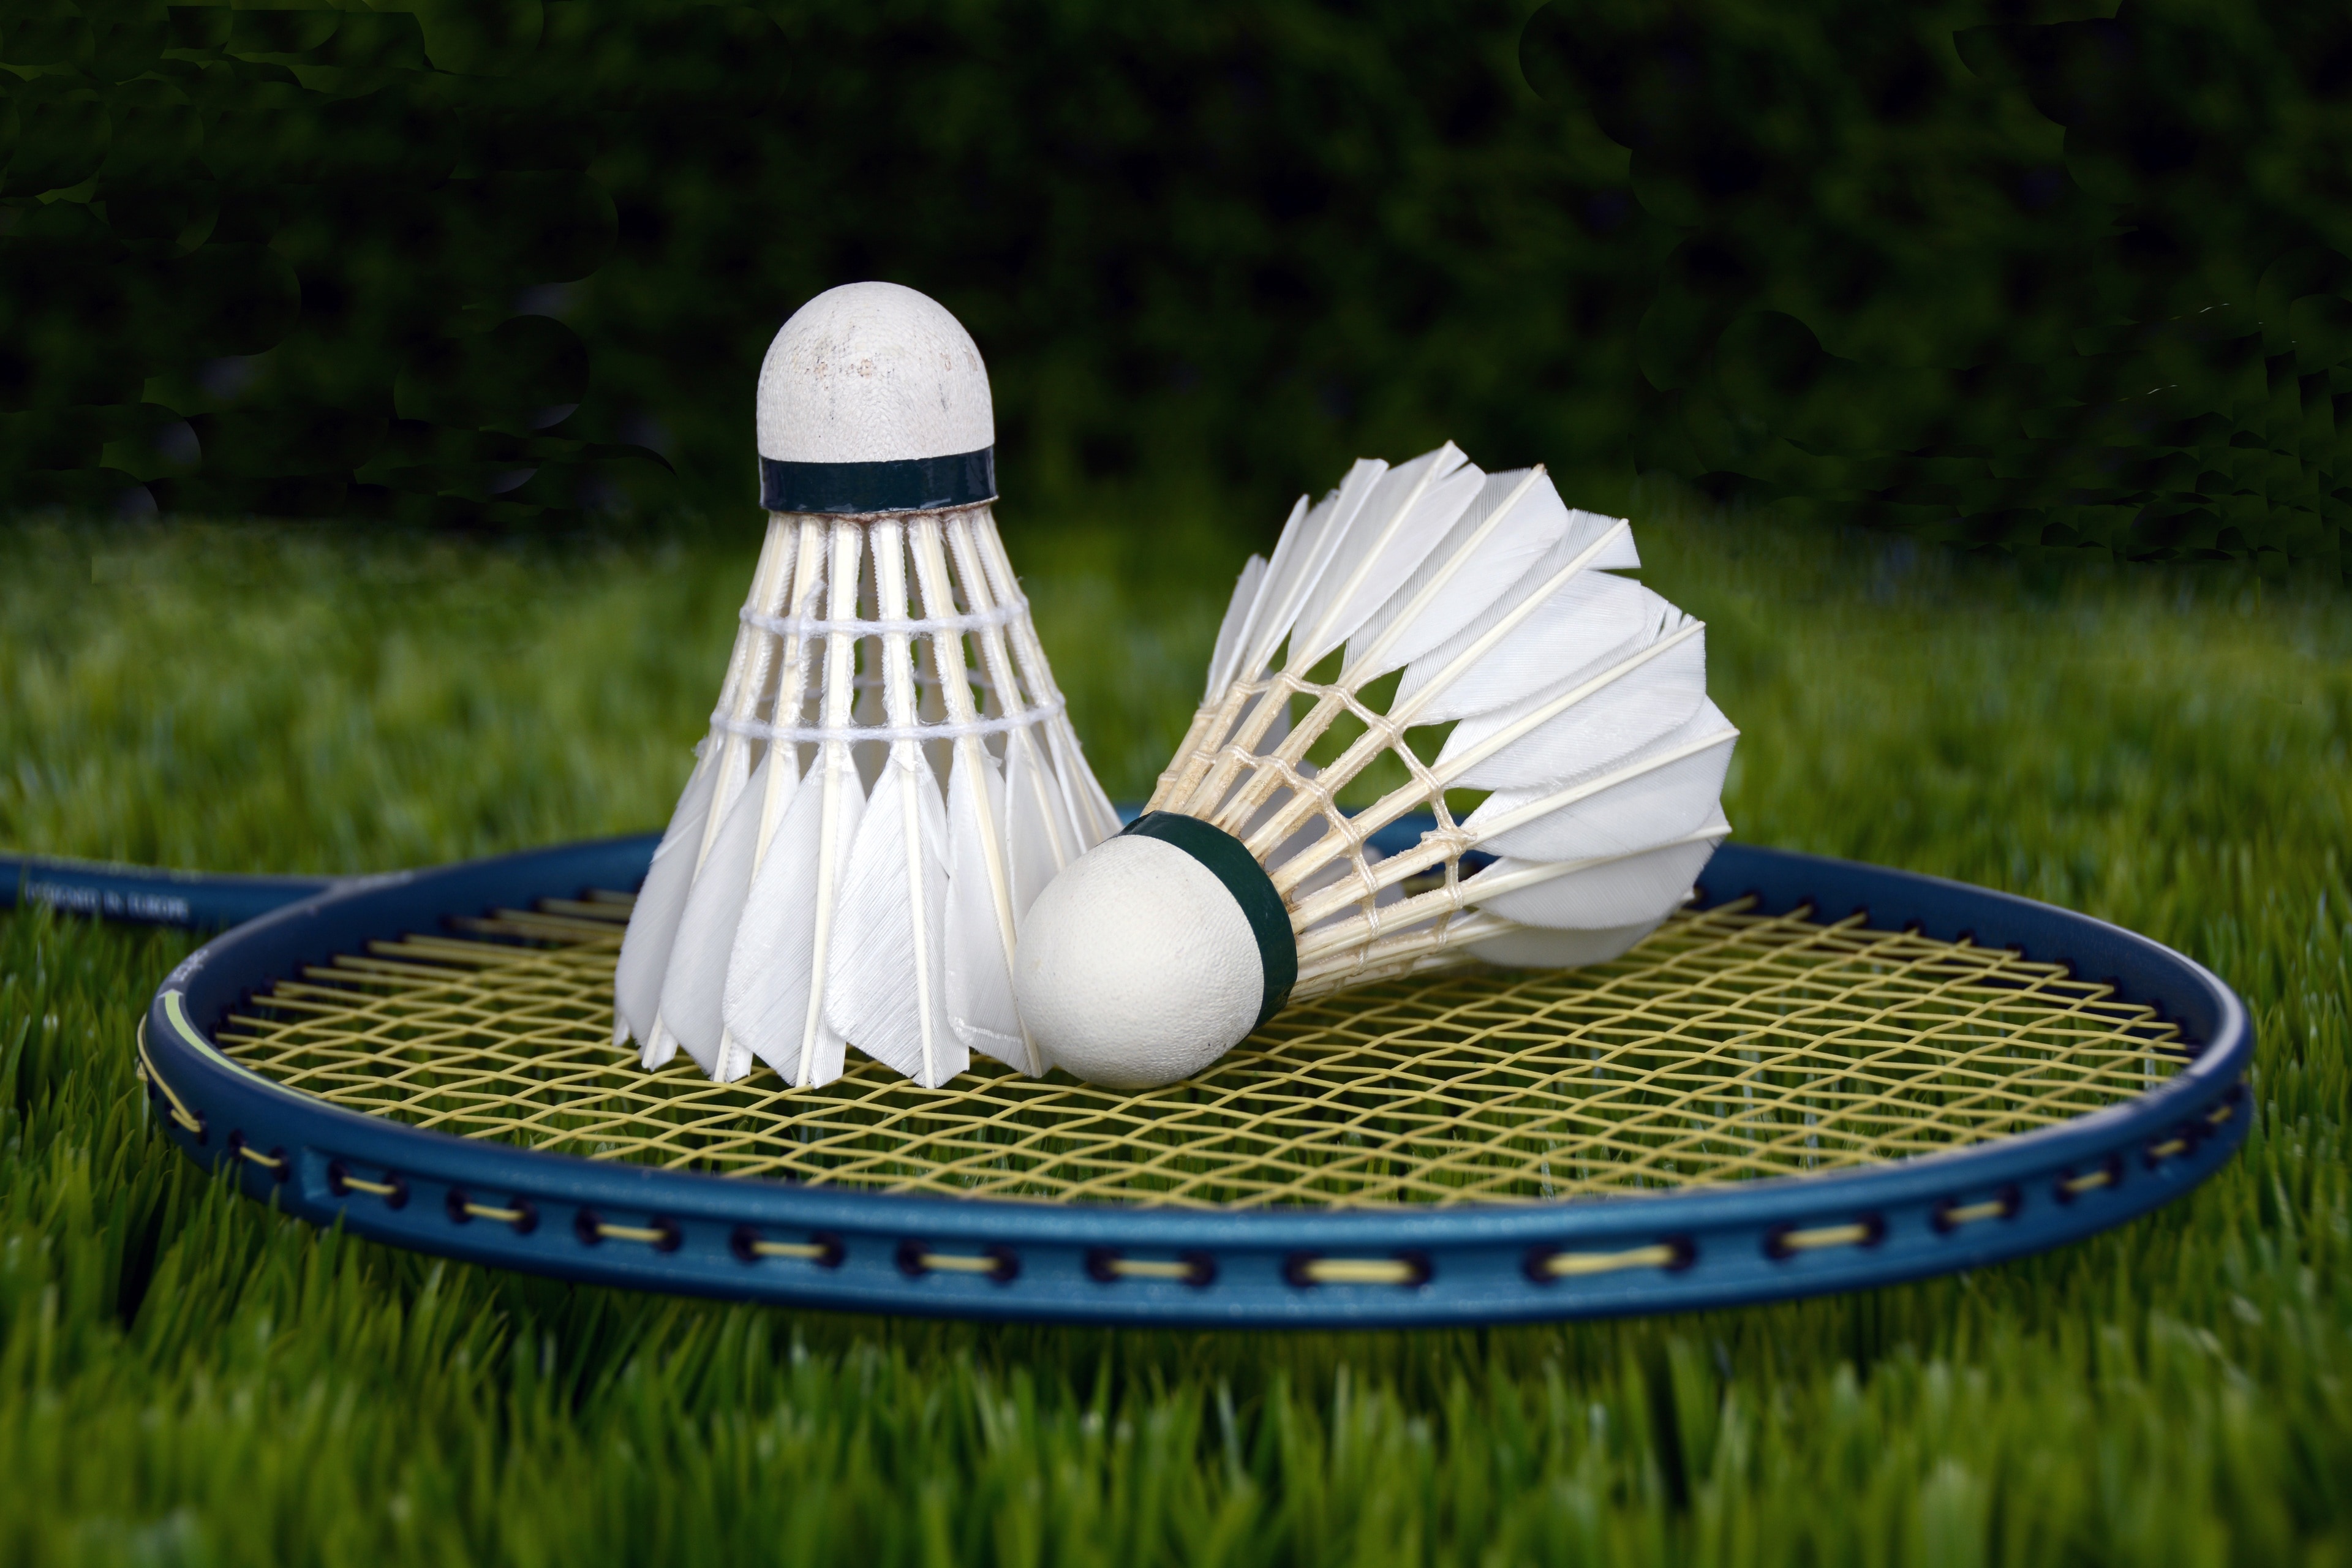 two white badminton ball on blue tennis racket